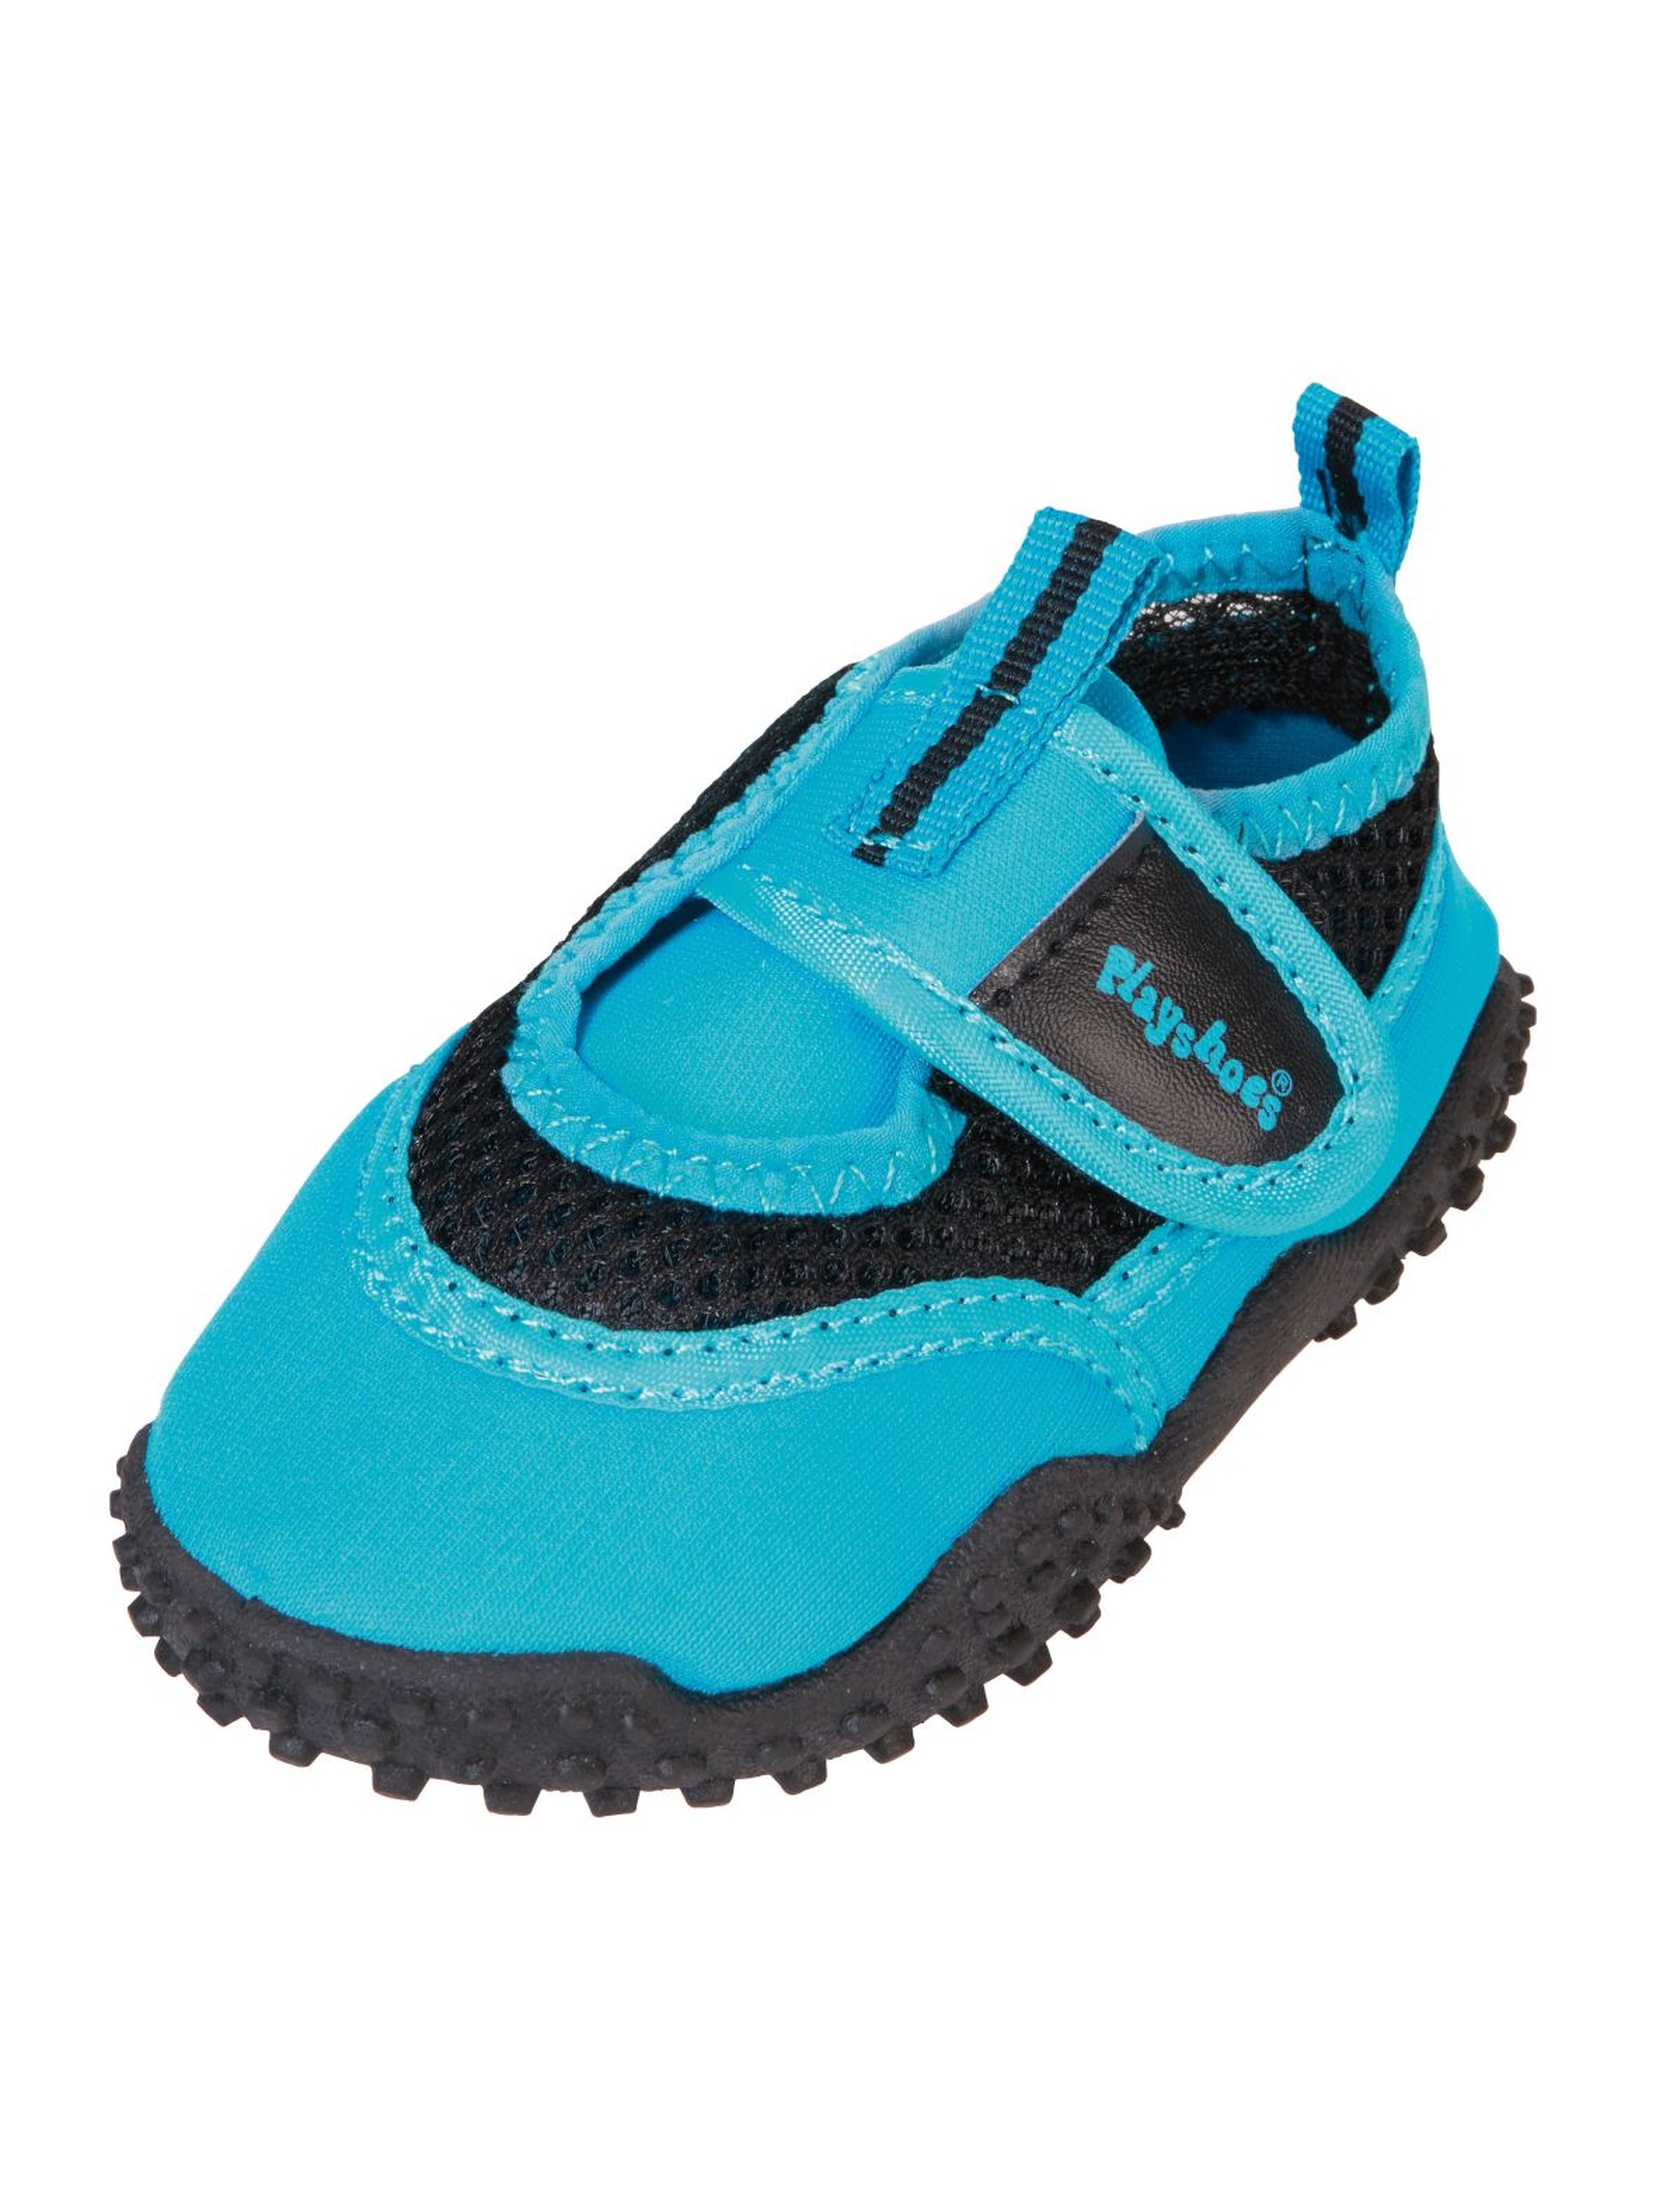 Buty kąpielowe niebieskie z filtrem UV 50+